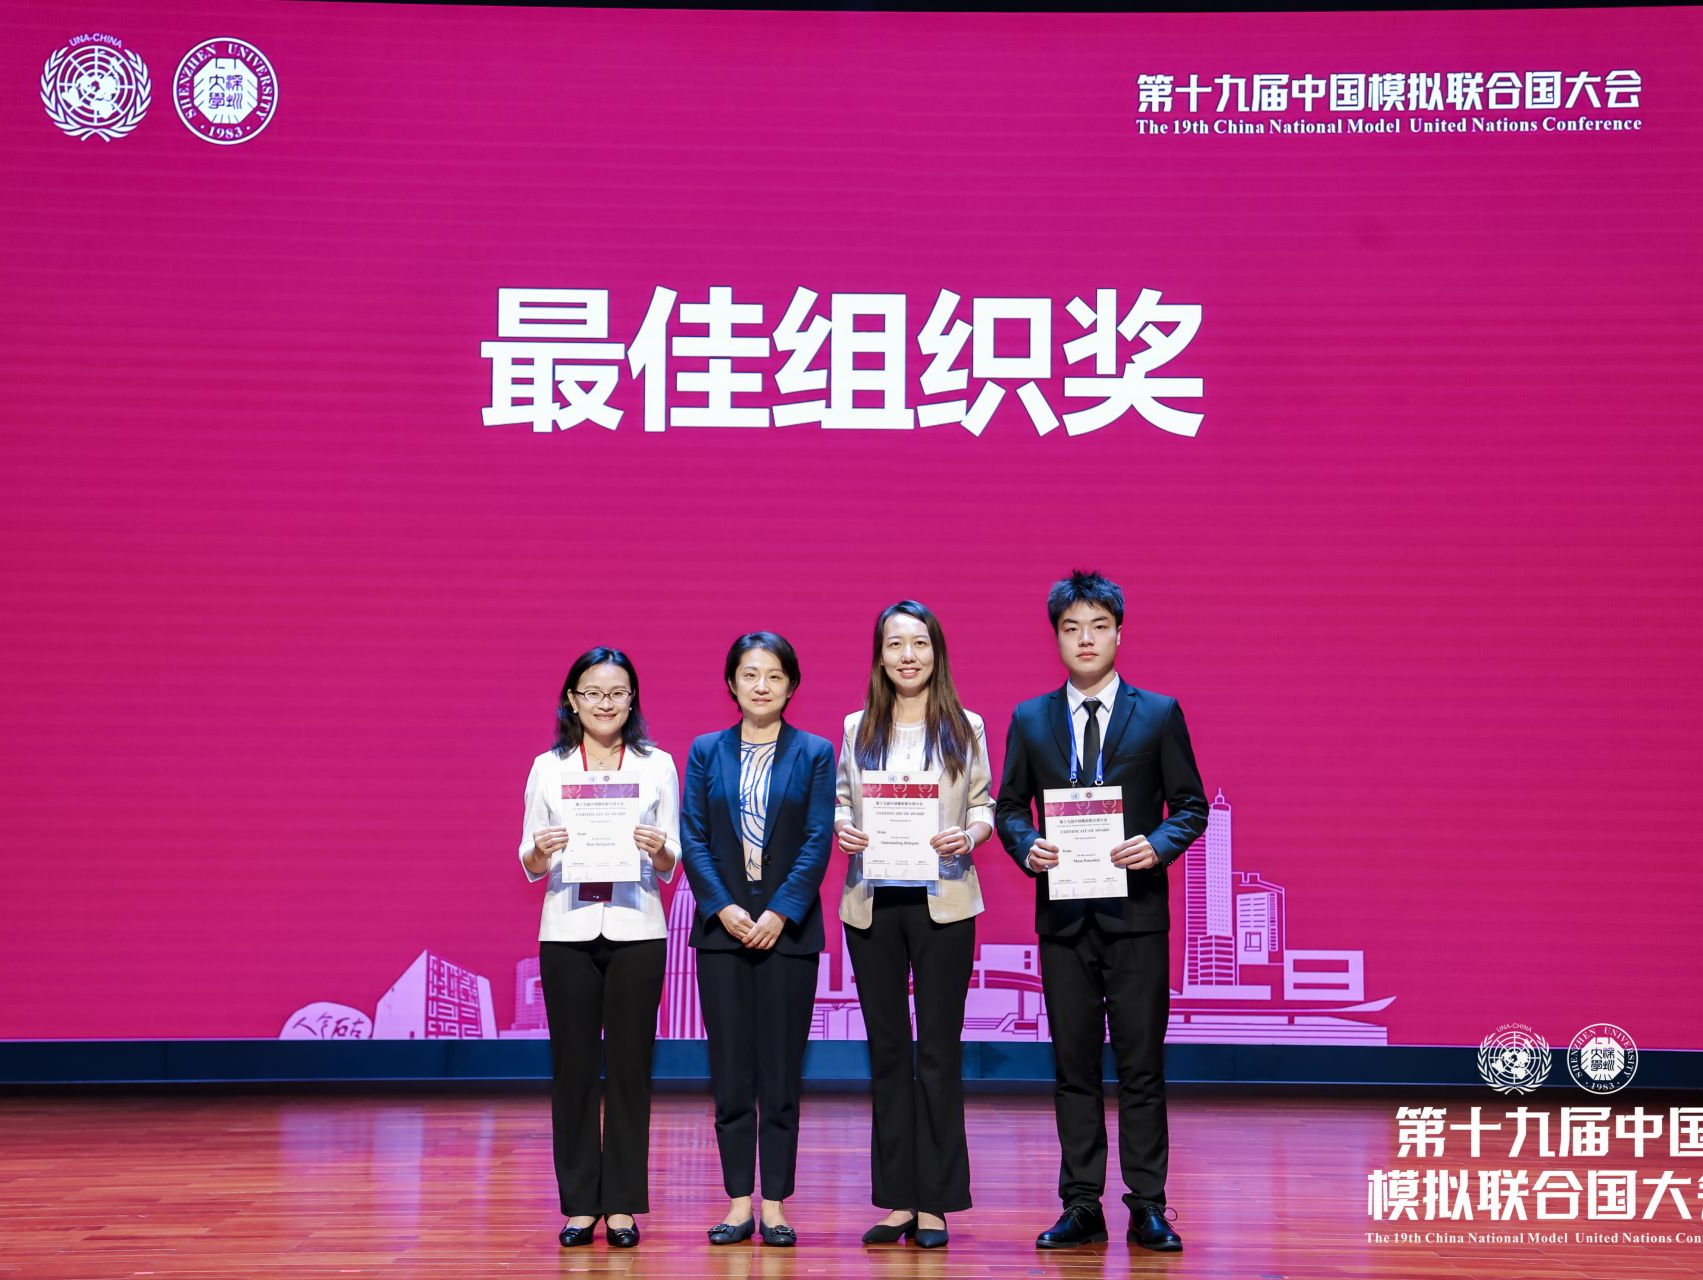 深大荣获第十九届中国模拟联合国大会最佳组织奖、最具潜力奖